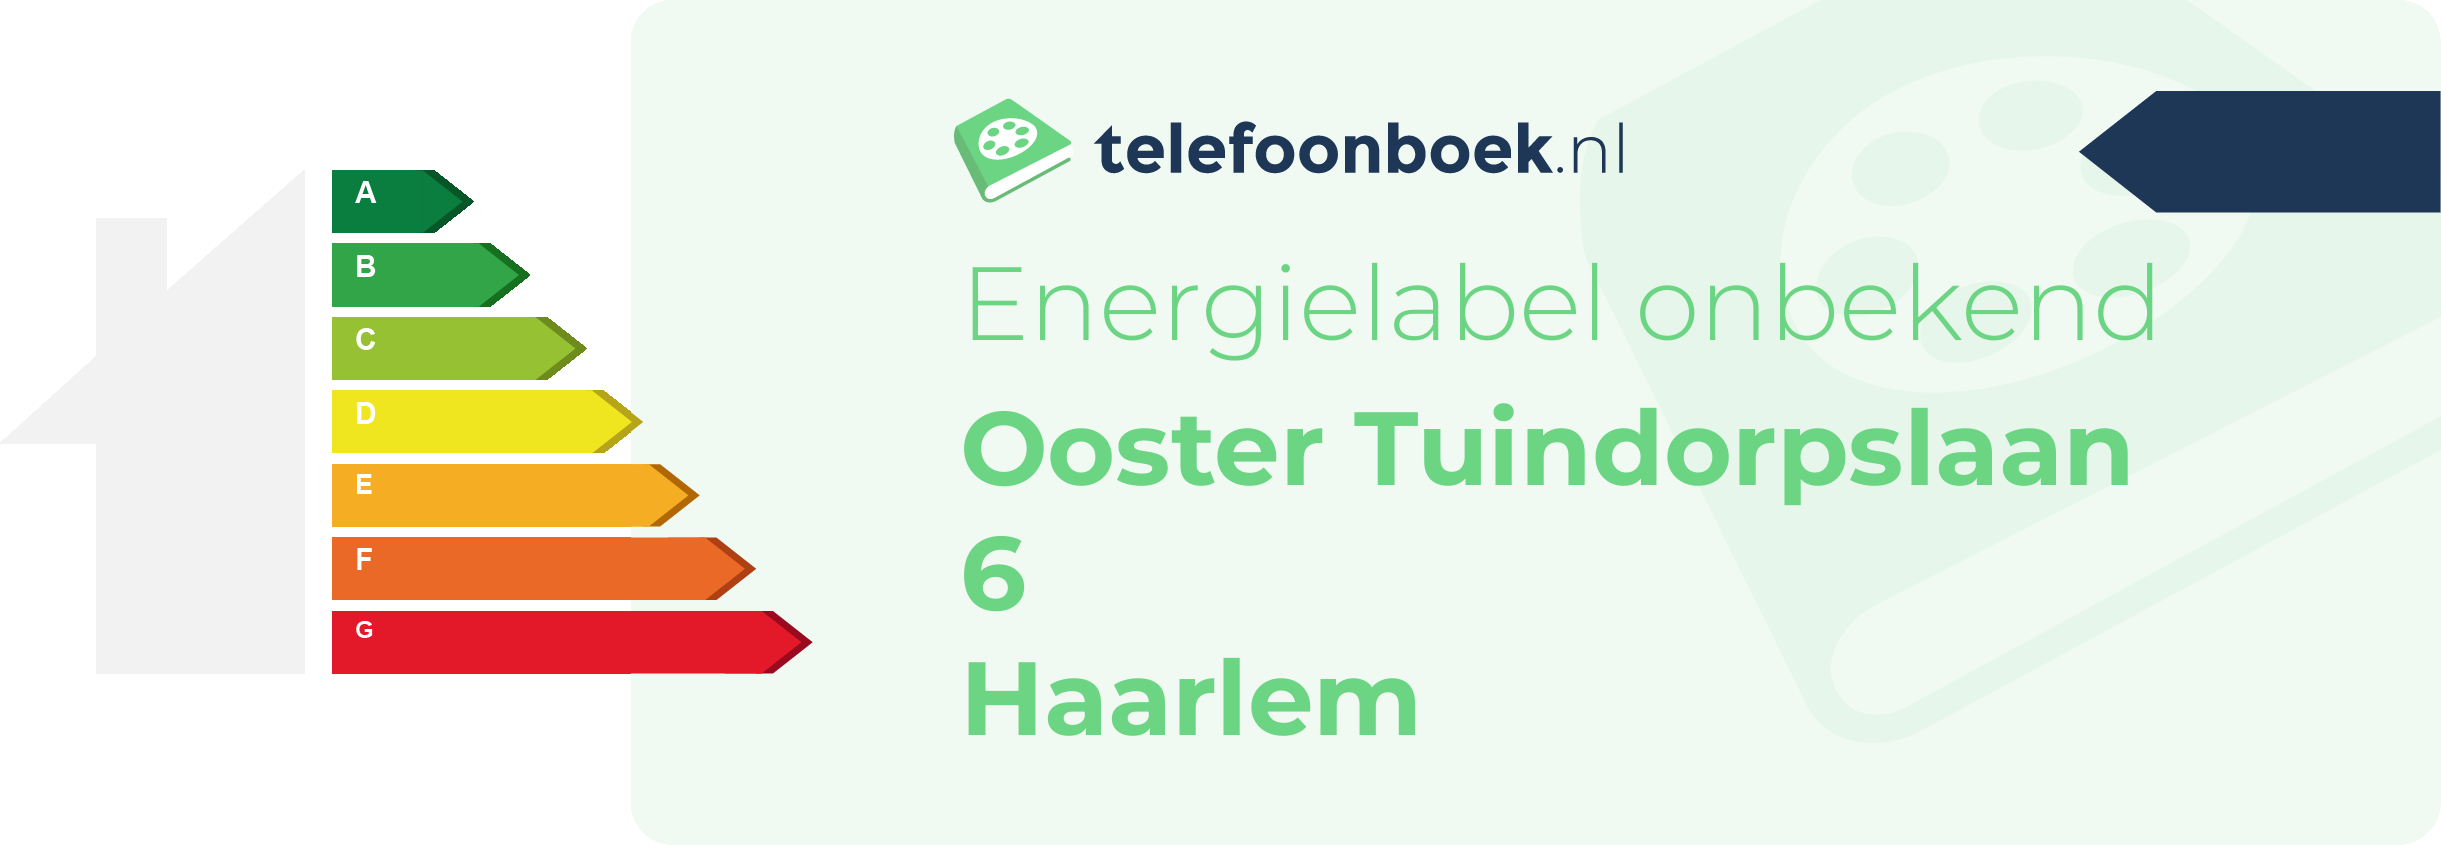 Energielabel Ooster Tuindorpslaan 6 Haarlem